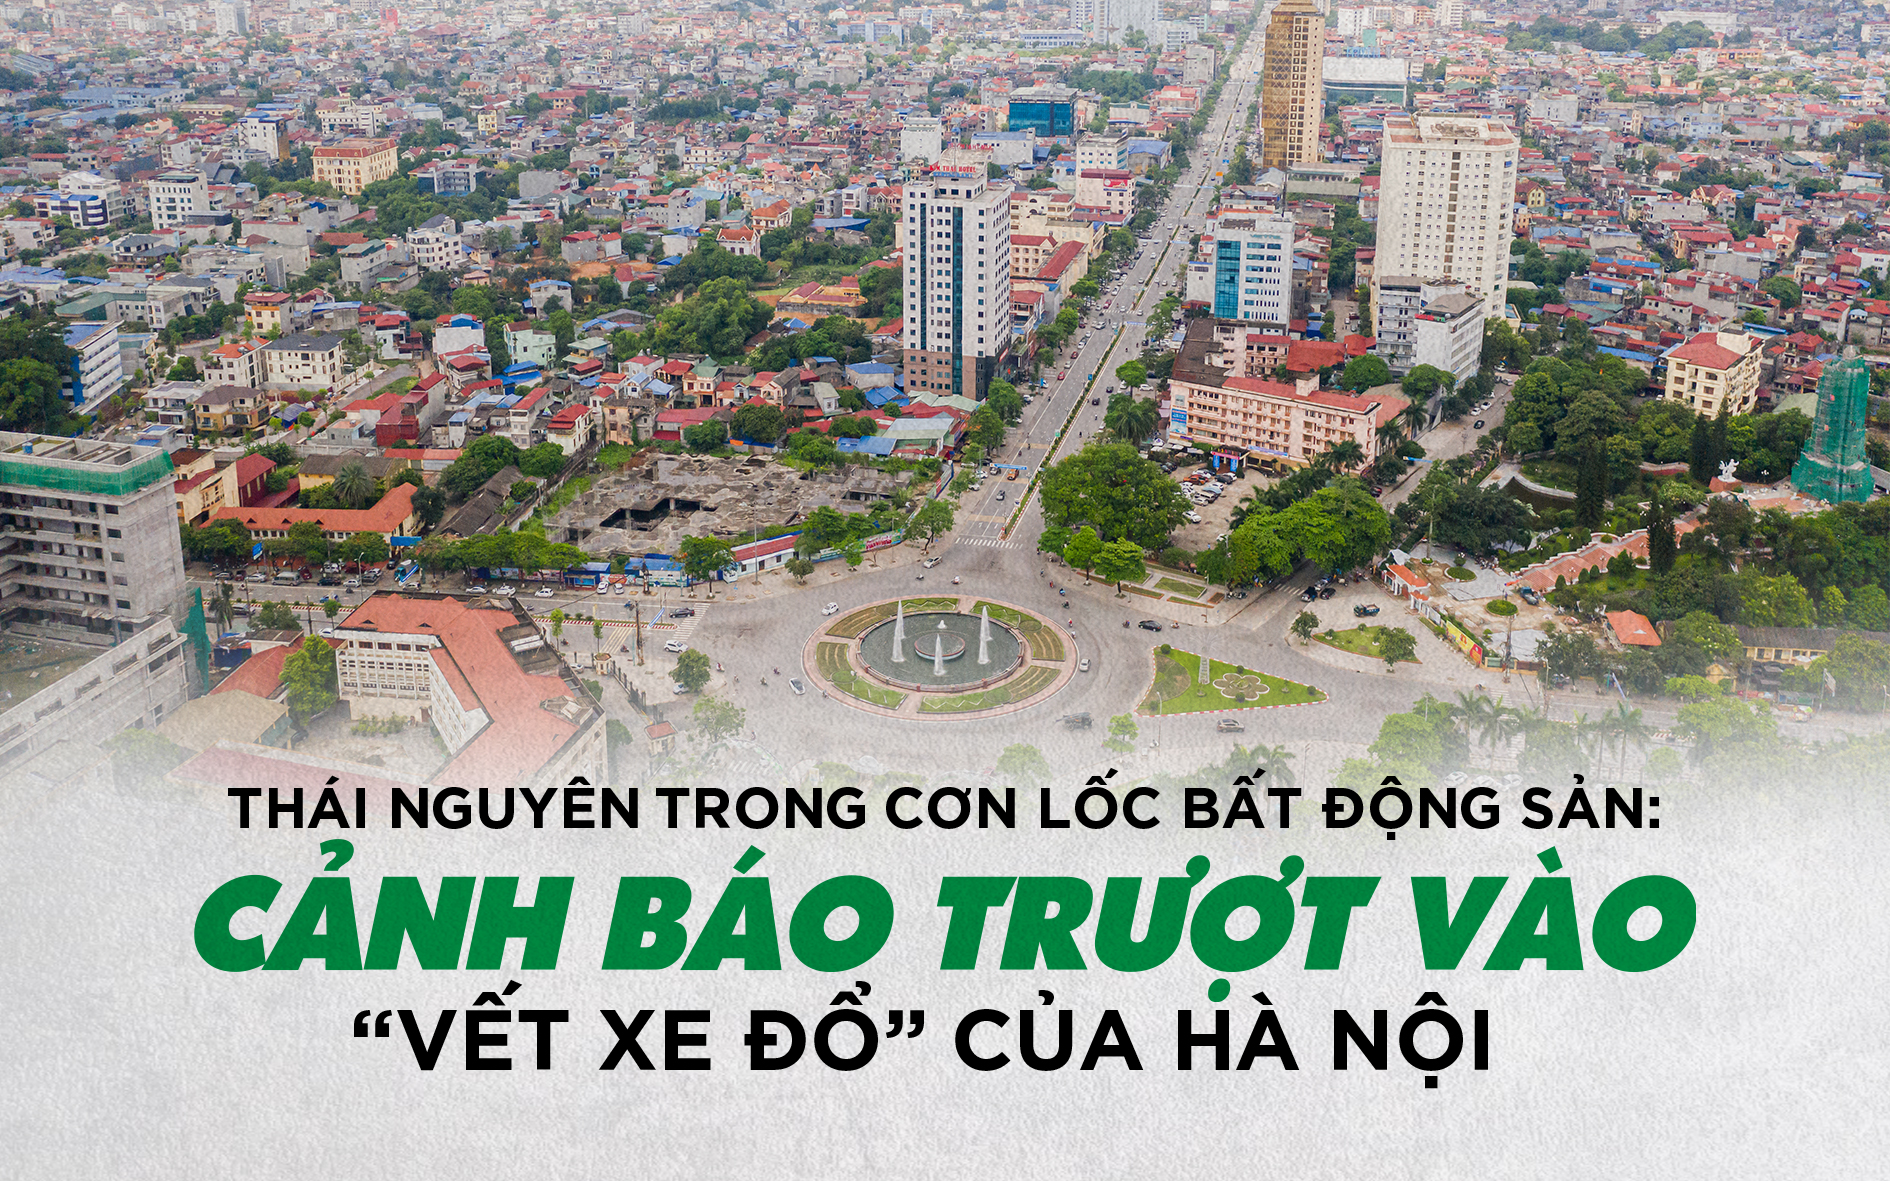 Thái Nguyên trong cơn lốc BĐS: Cảnh báo trượt vào “vết xe đổ” của Hà Nội